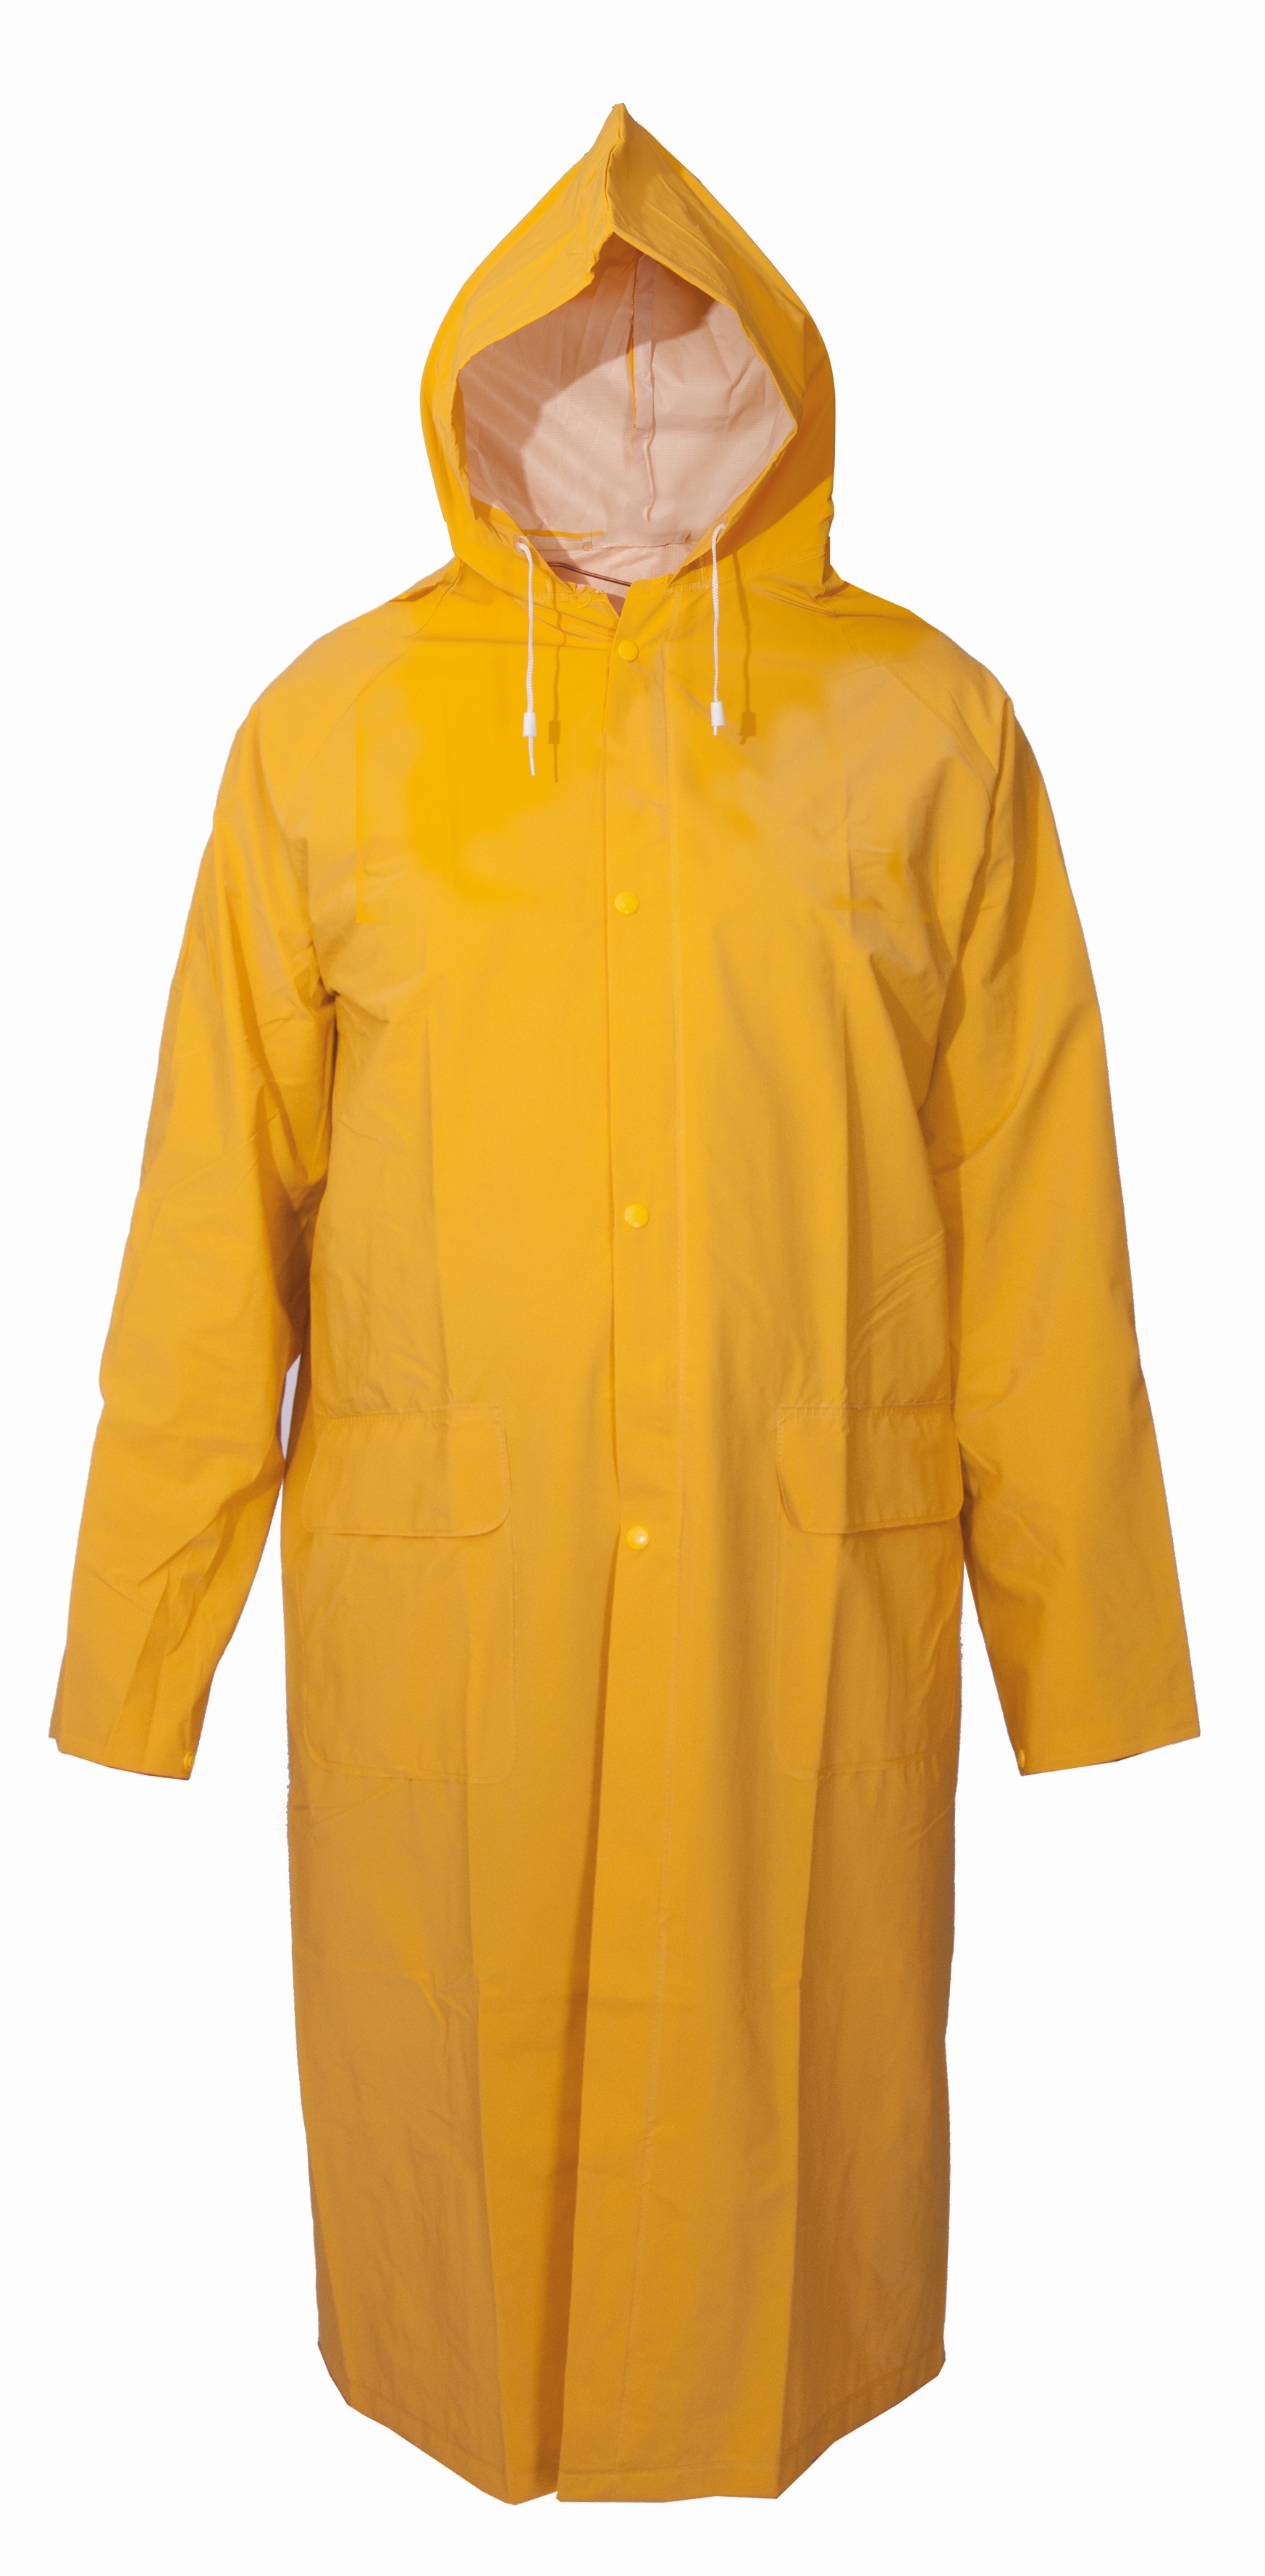 Voděodolný plášť DEREK, nepromokavý, žlutý